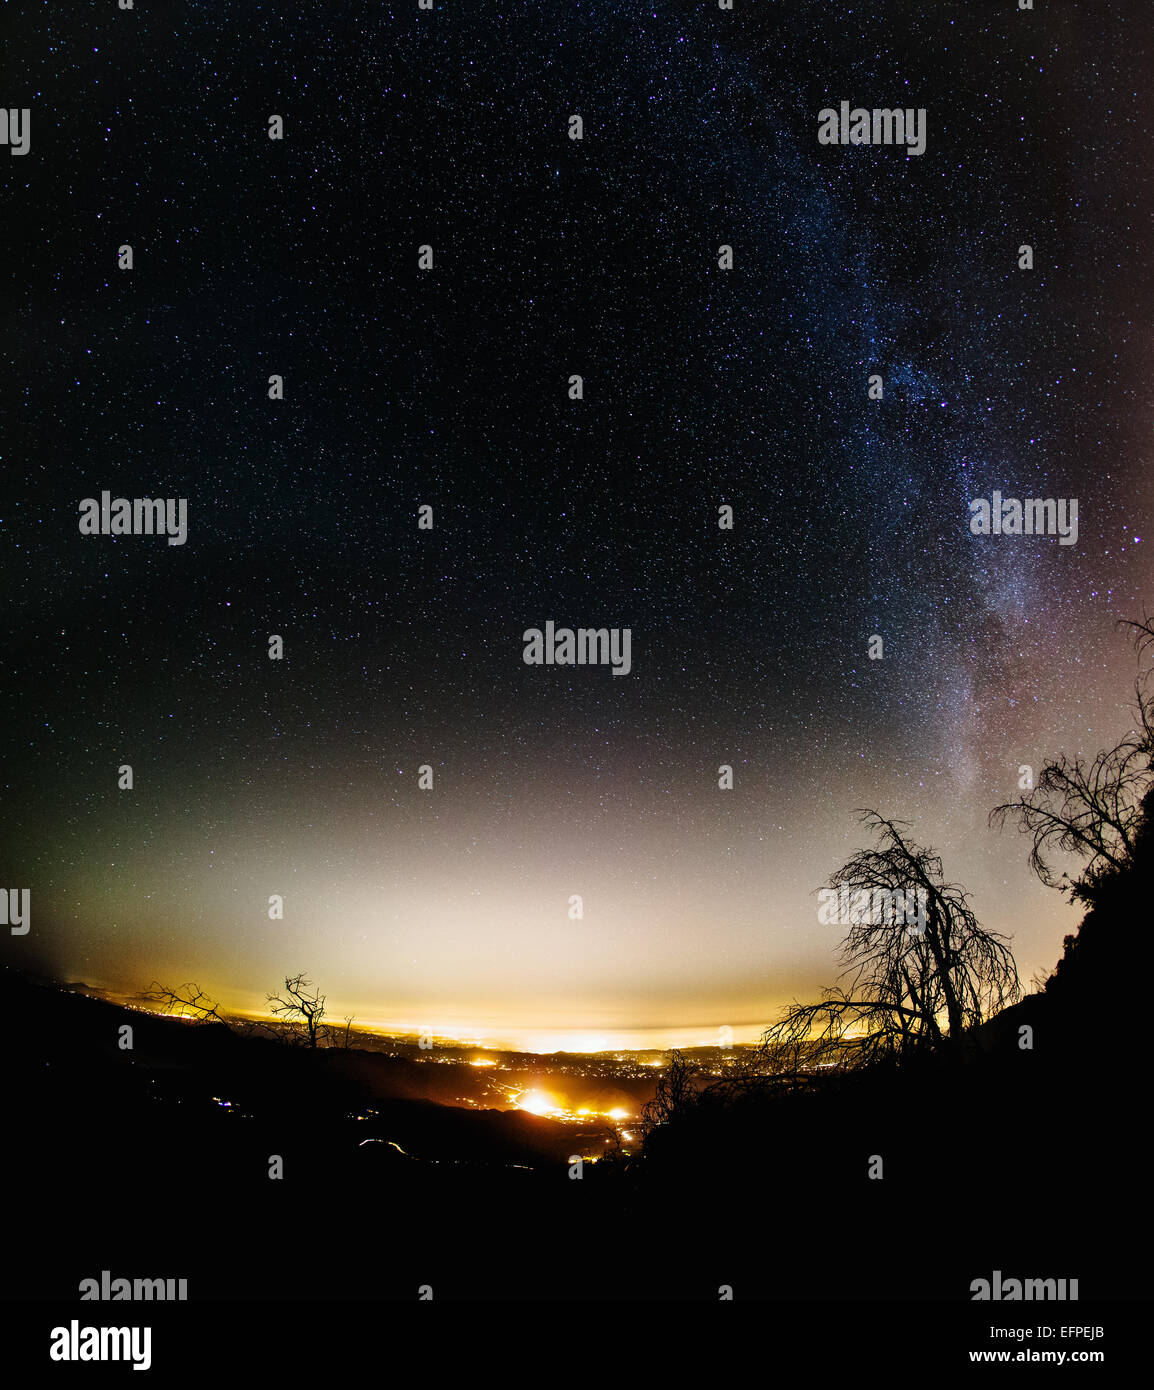 Vista di profilarsi il paesaggio e la via lattea di notte da Palomar Mountain, Palomar, CALIFORNIA, STATI UNITI D'AMERICA Foto Stock